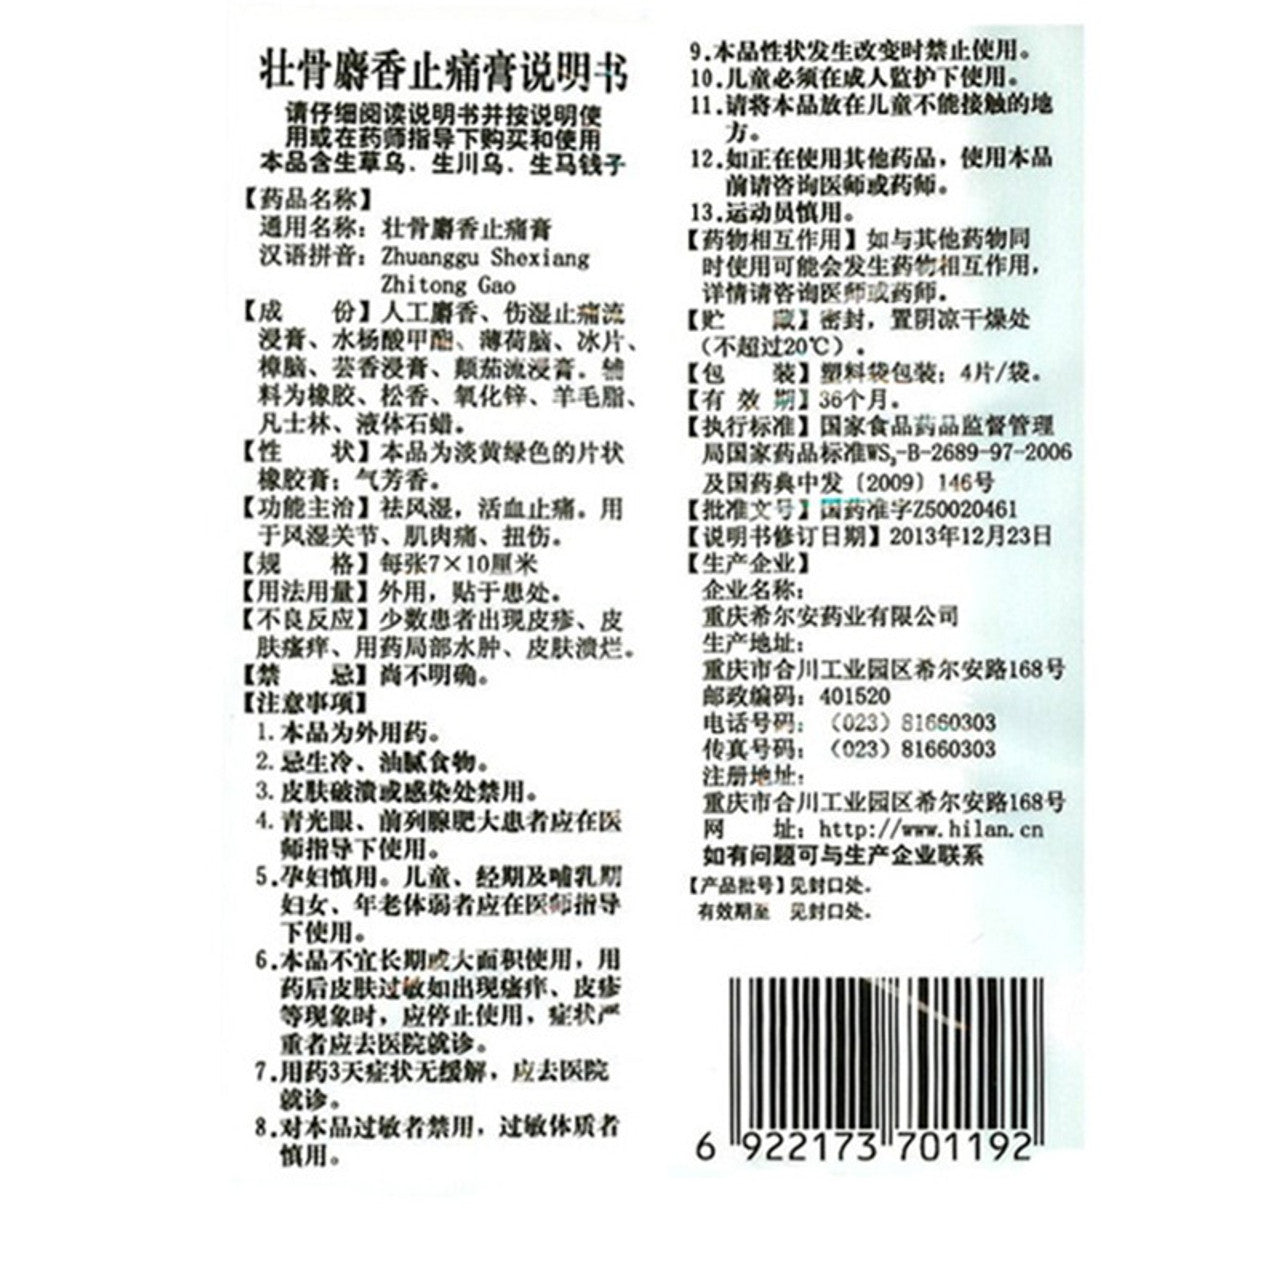 (4 Plasters * 5 boxes). Zhuanggu Shexiang Zhitong Gao For Rheumatism Rheumatoid